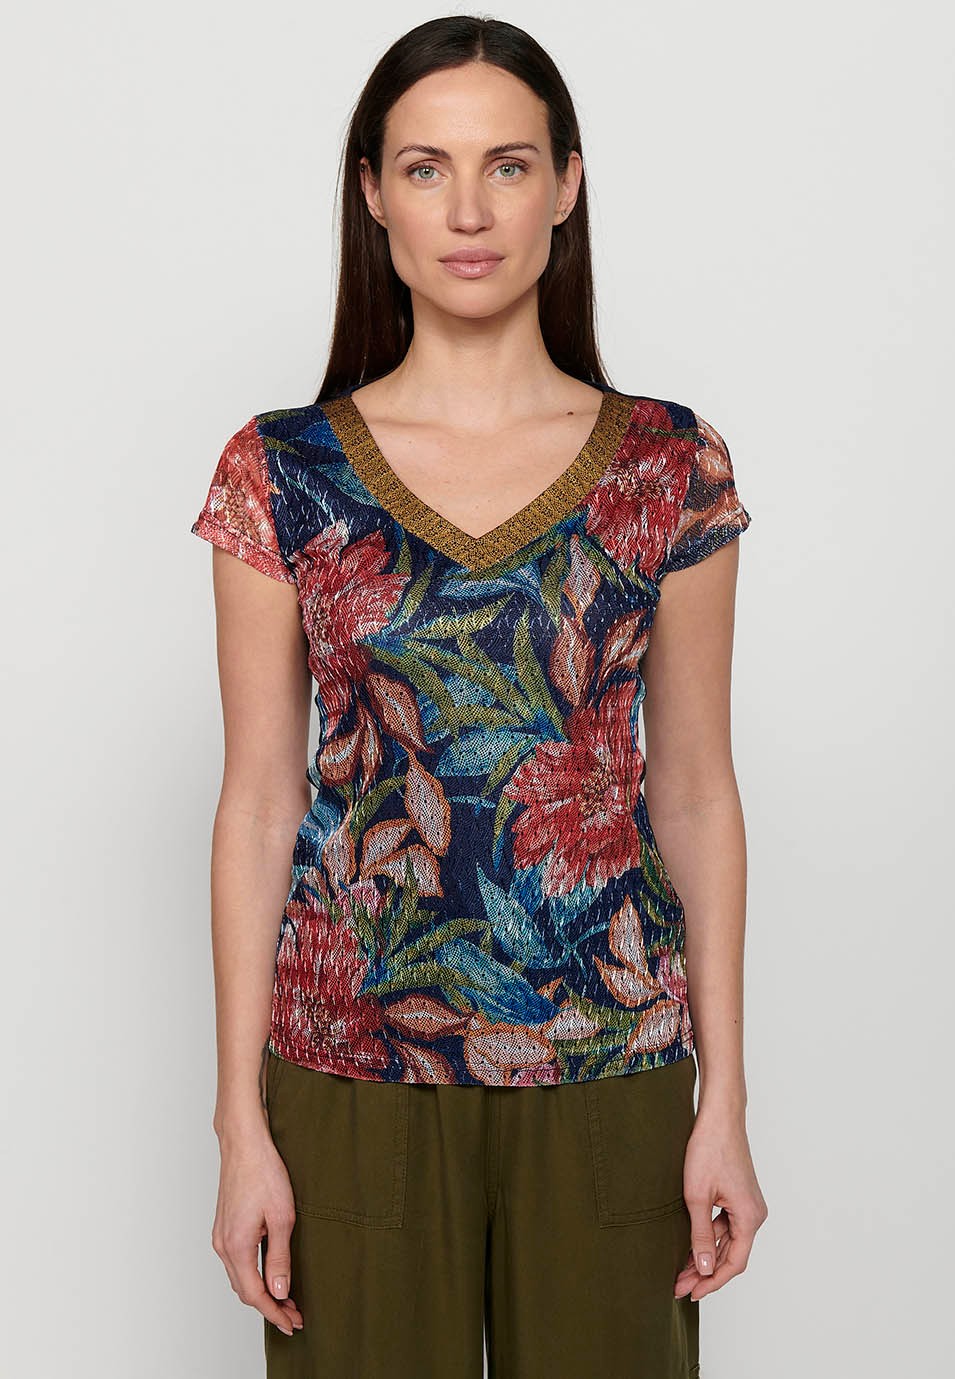 Camiseta de manga corta, cuello pico y estampado floral multicolor para mujer